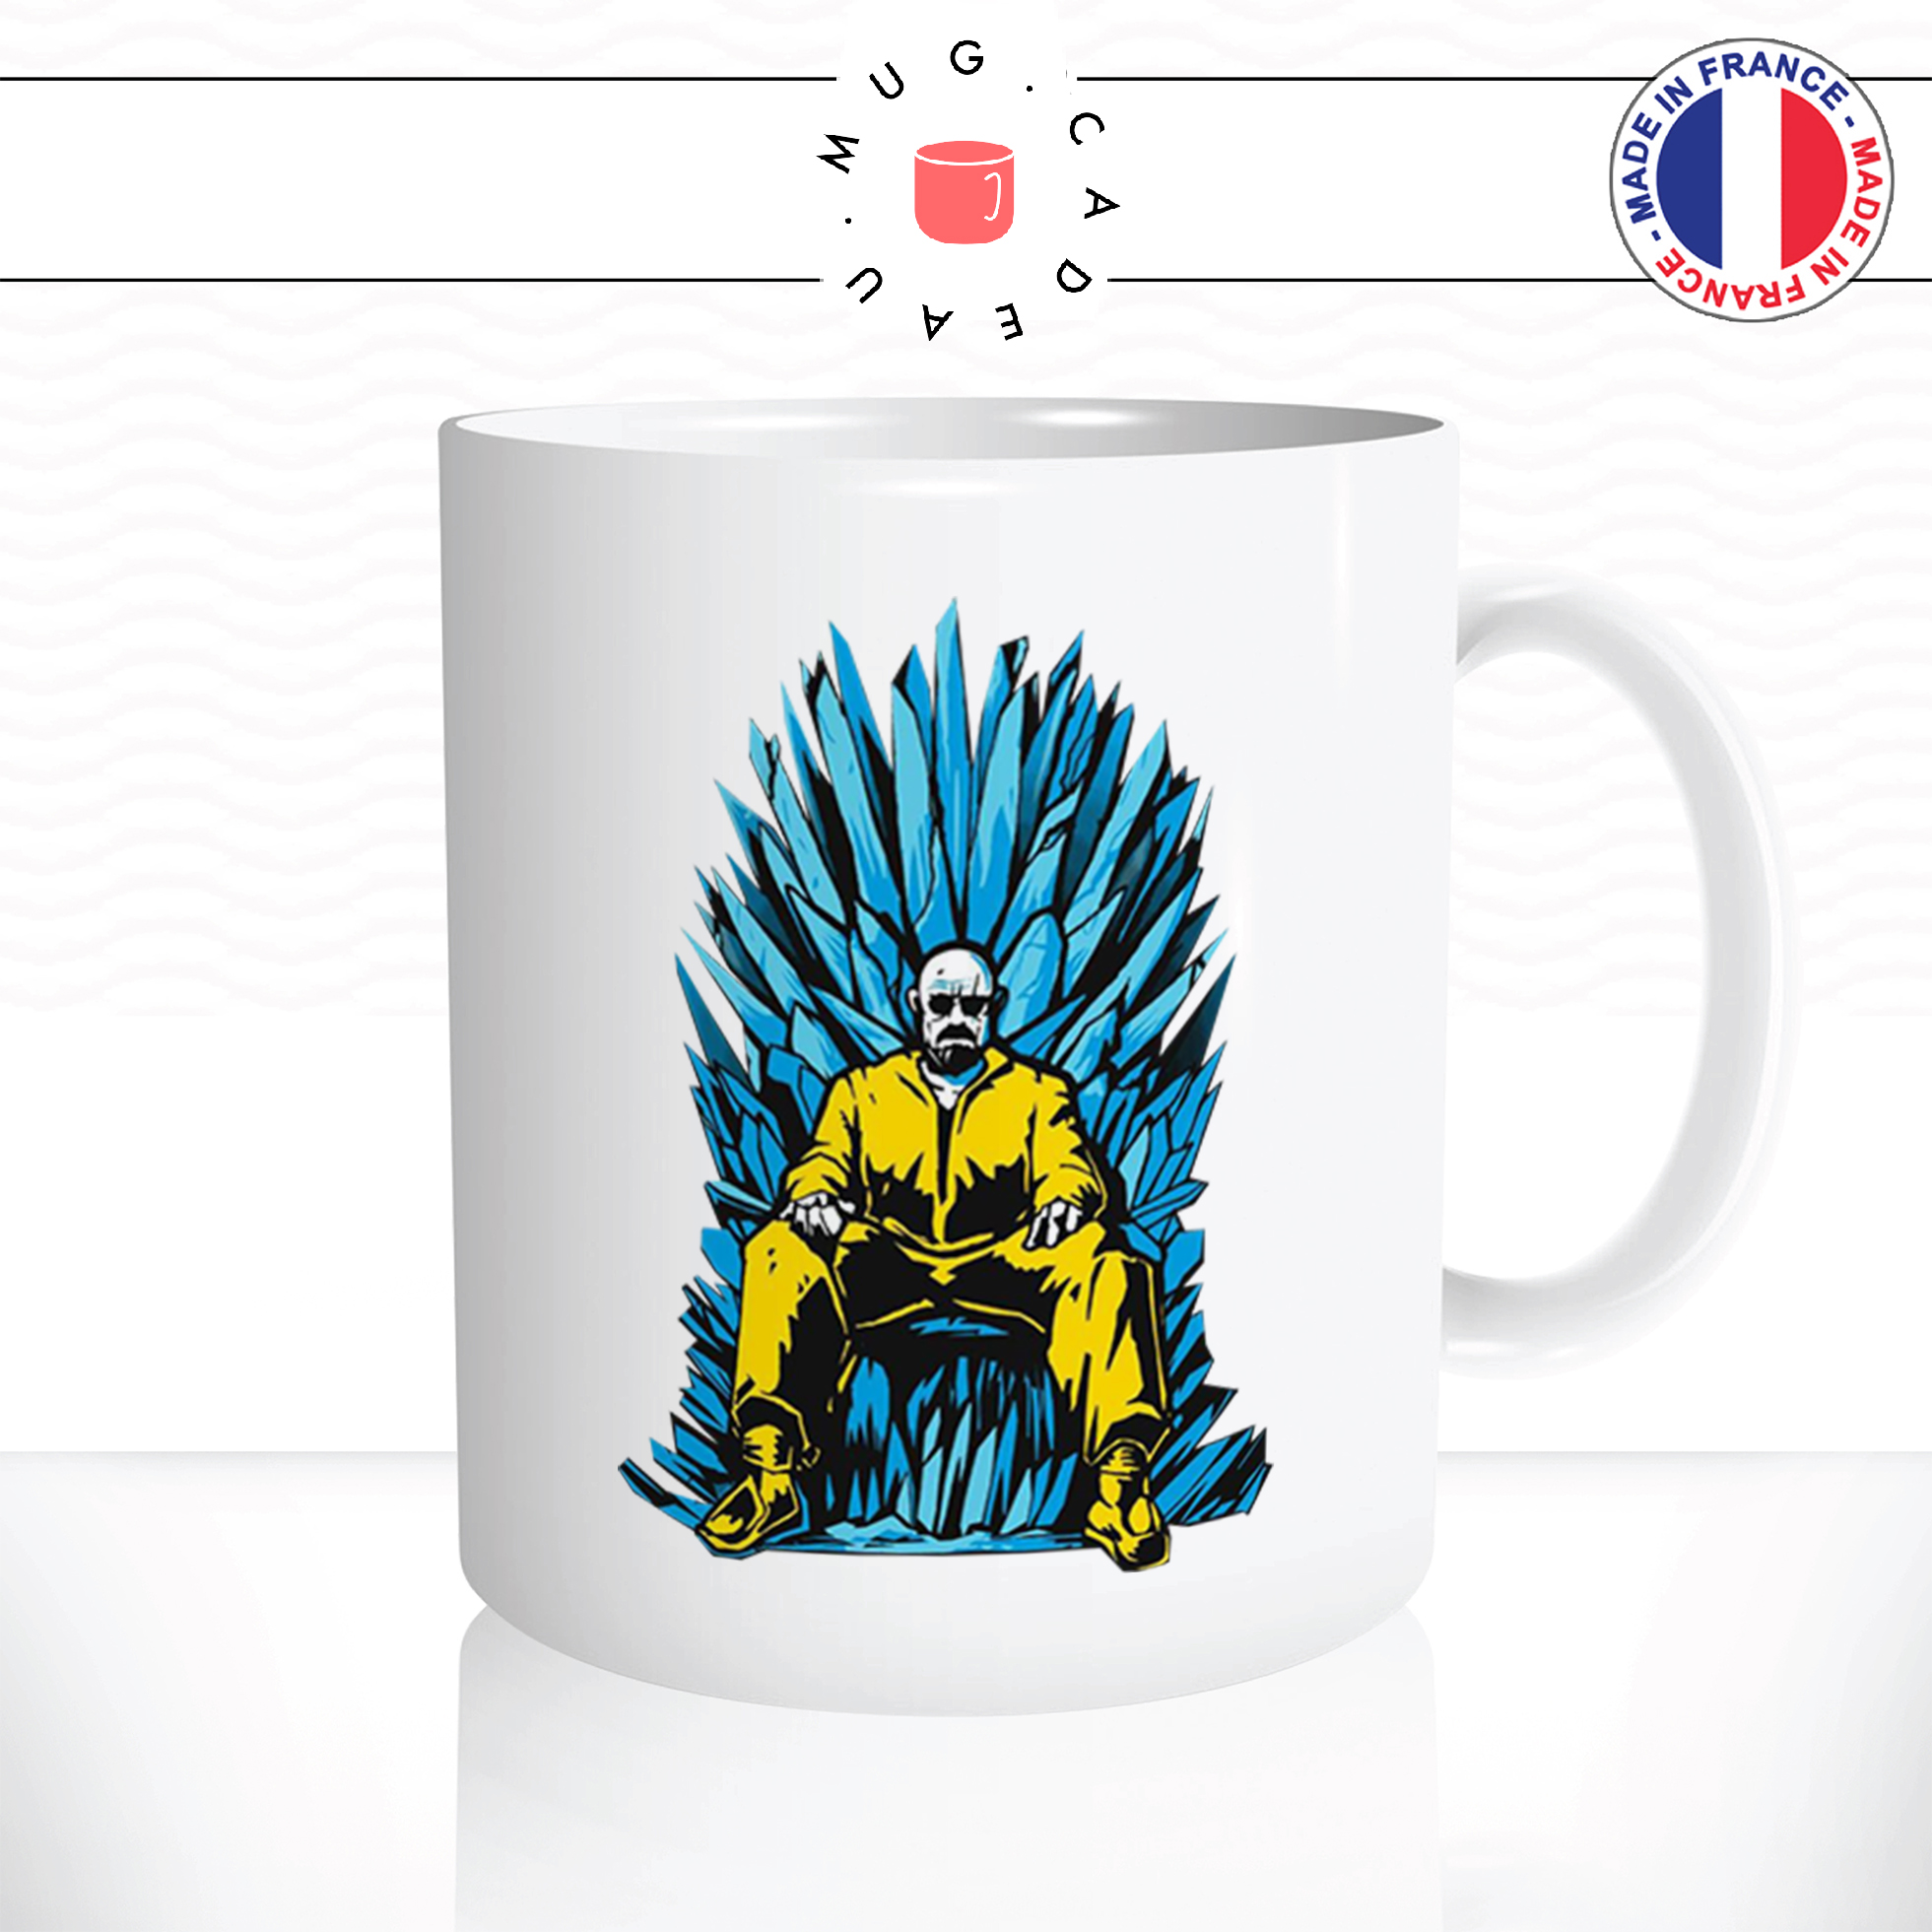 mug-tasse-ref5-got-breaking-bad-throne-fer-cafe-the-mugs-tasses-personnalise-anse-droite